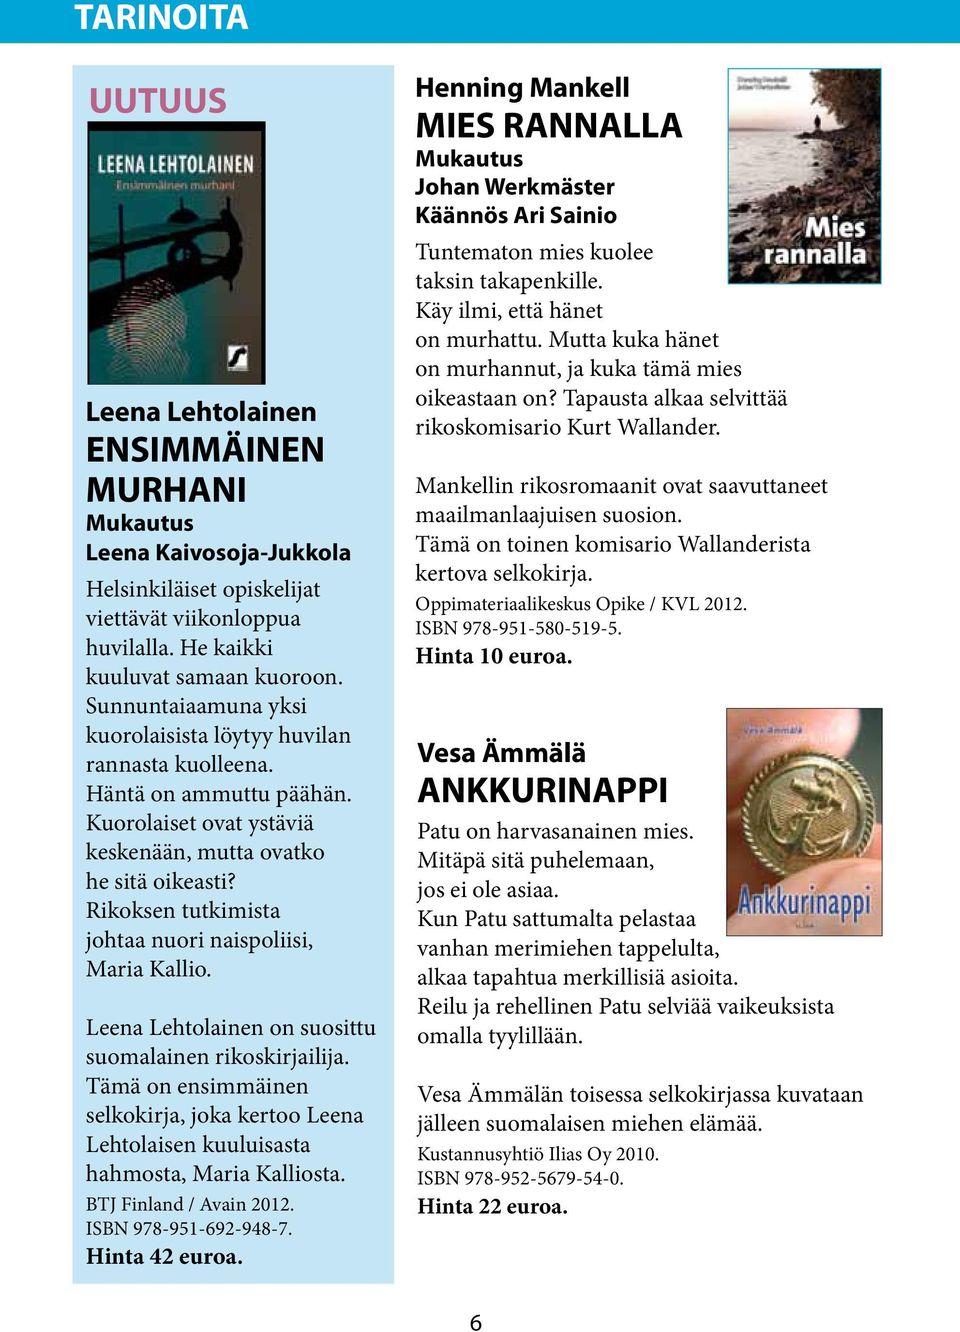 Rikoksen tutkimista johtaa nuori naispoliisi, Maria Kallio. Leena Lehtolainen on suosittu suomalainen rikoskirjailija.